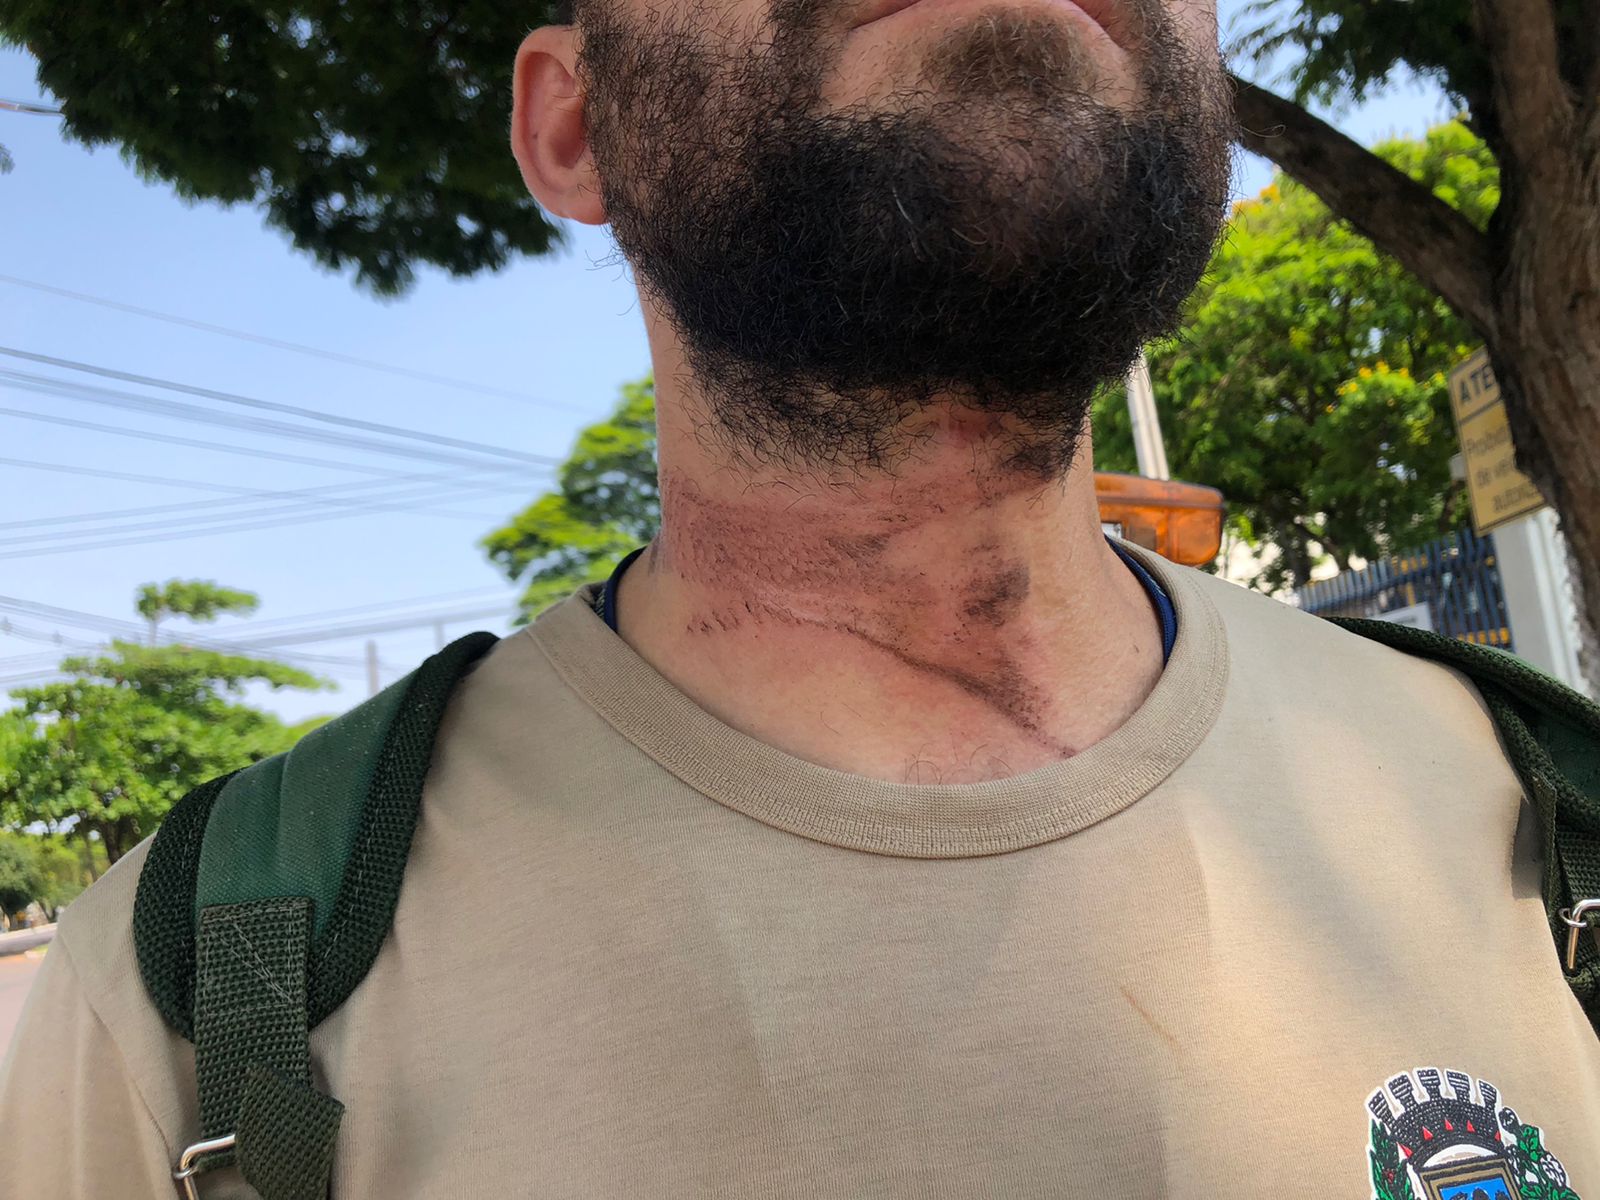 Jornal Ilustrado - Motociclista tem pescoço atingido por fiação enquanto passava em rua de Umuarama 